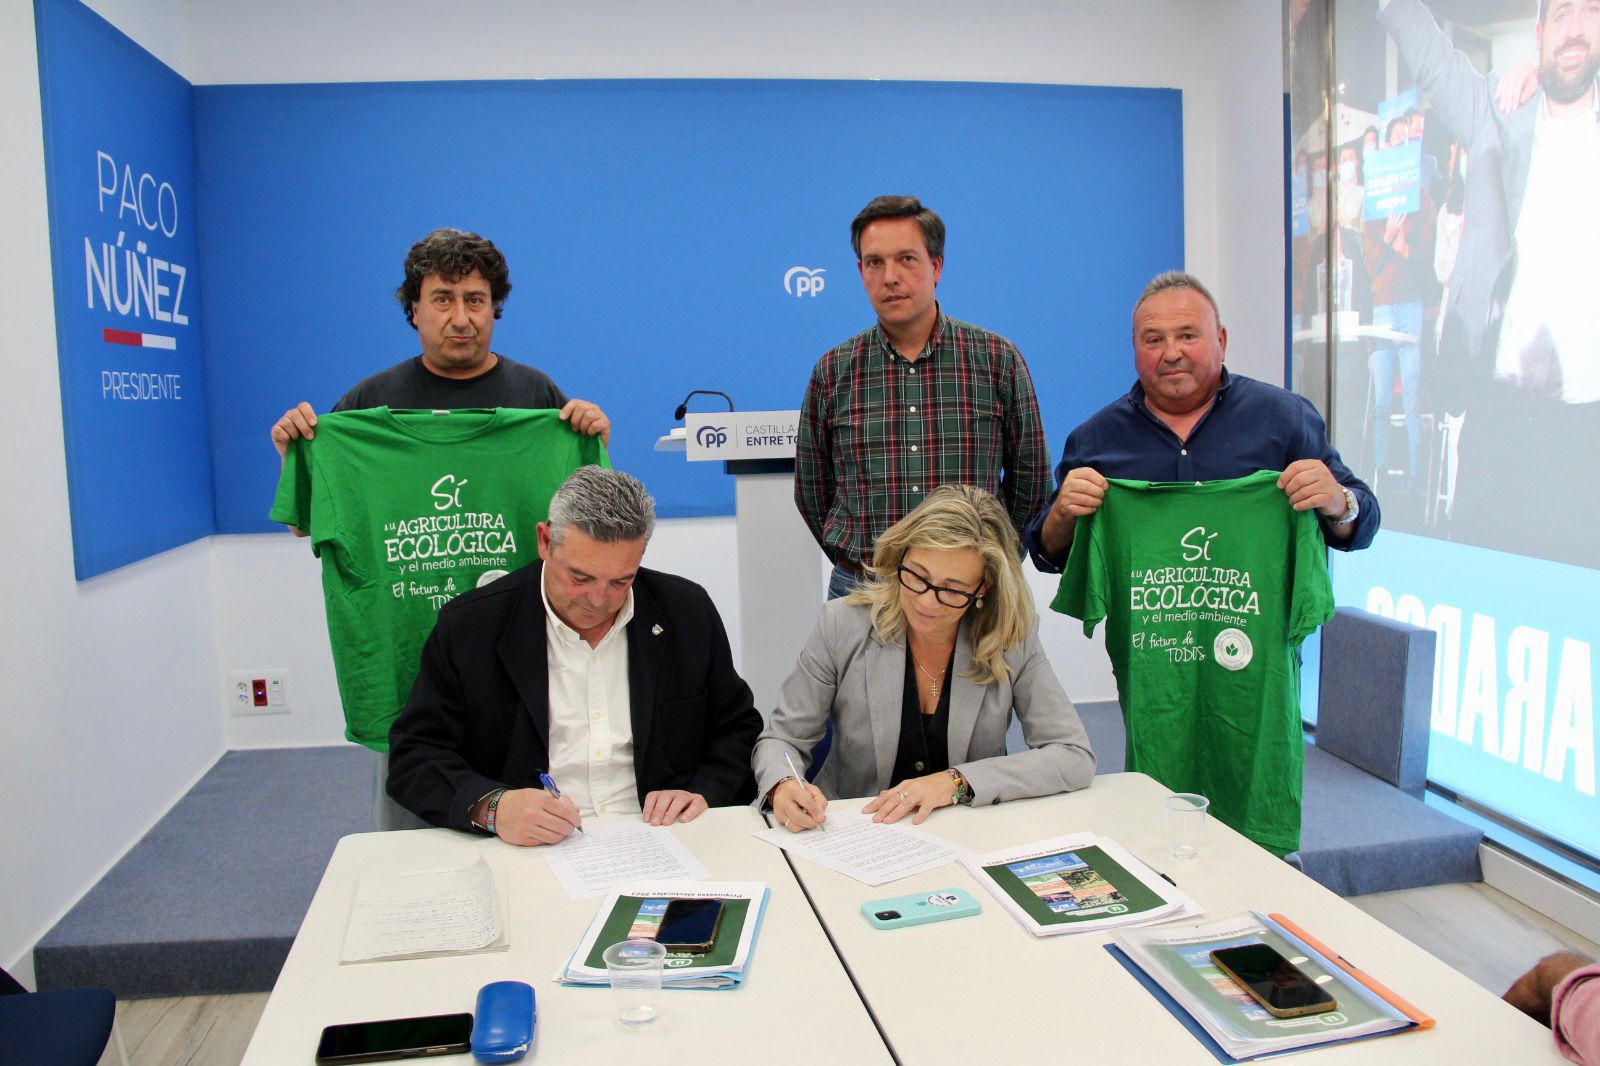 El PP de Núñez firma un compromiso con la Plataforma para revertir los recortes de García-Page a la agricultura ecológica